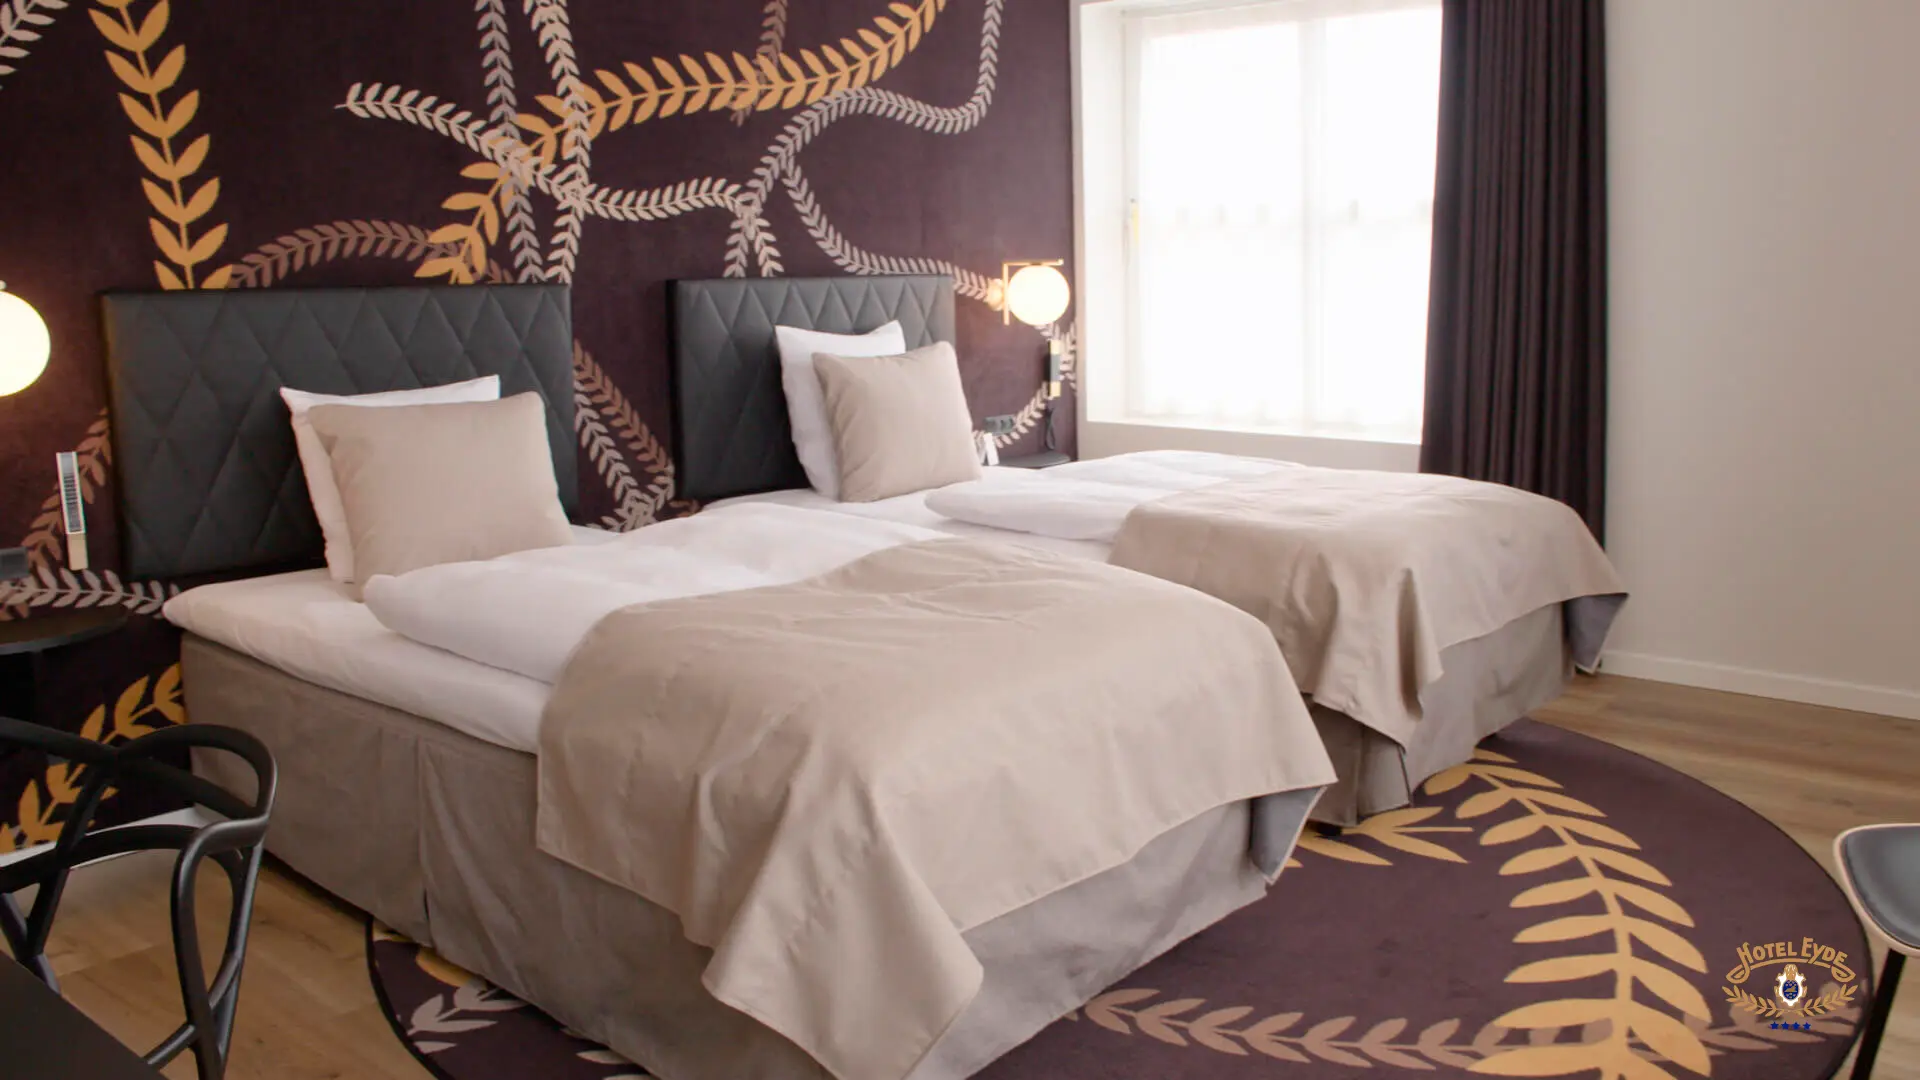 Hotel Eyde Herning hotel værelser indretning og leverandør bestående af elegante værelser i høj kvalitet med flos væg lamper og her ses på senge ved siden af hinanden der kan skubbes sammen til to